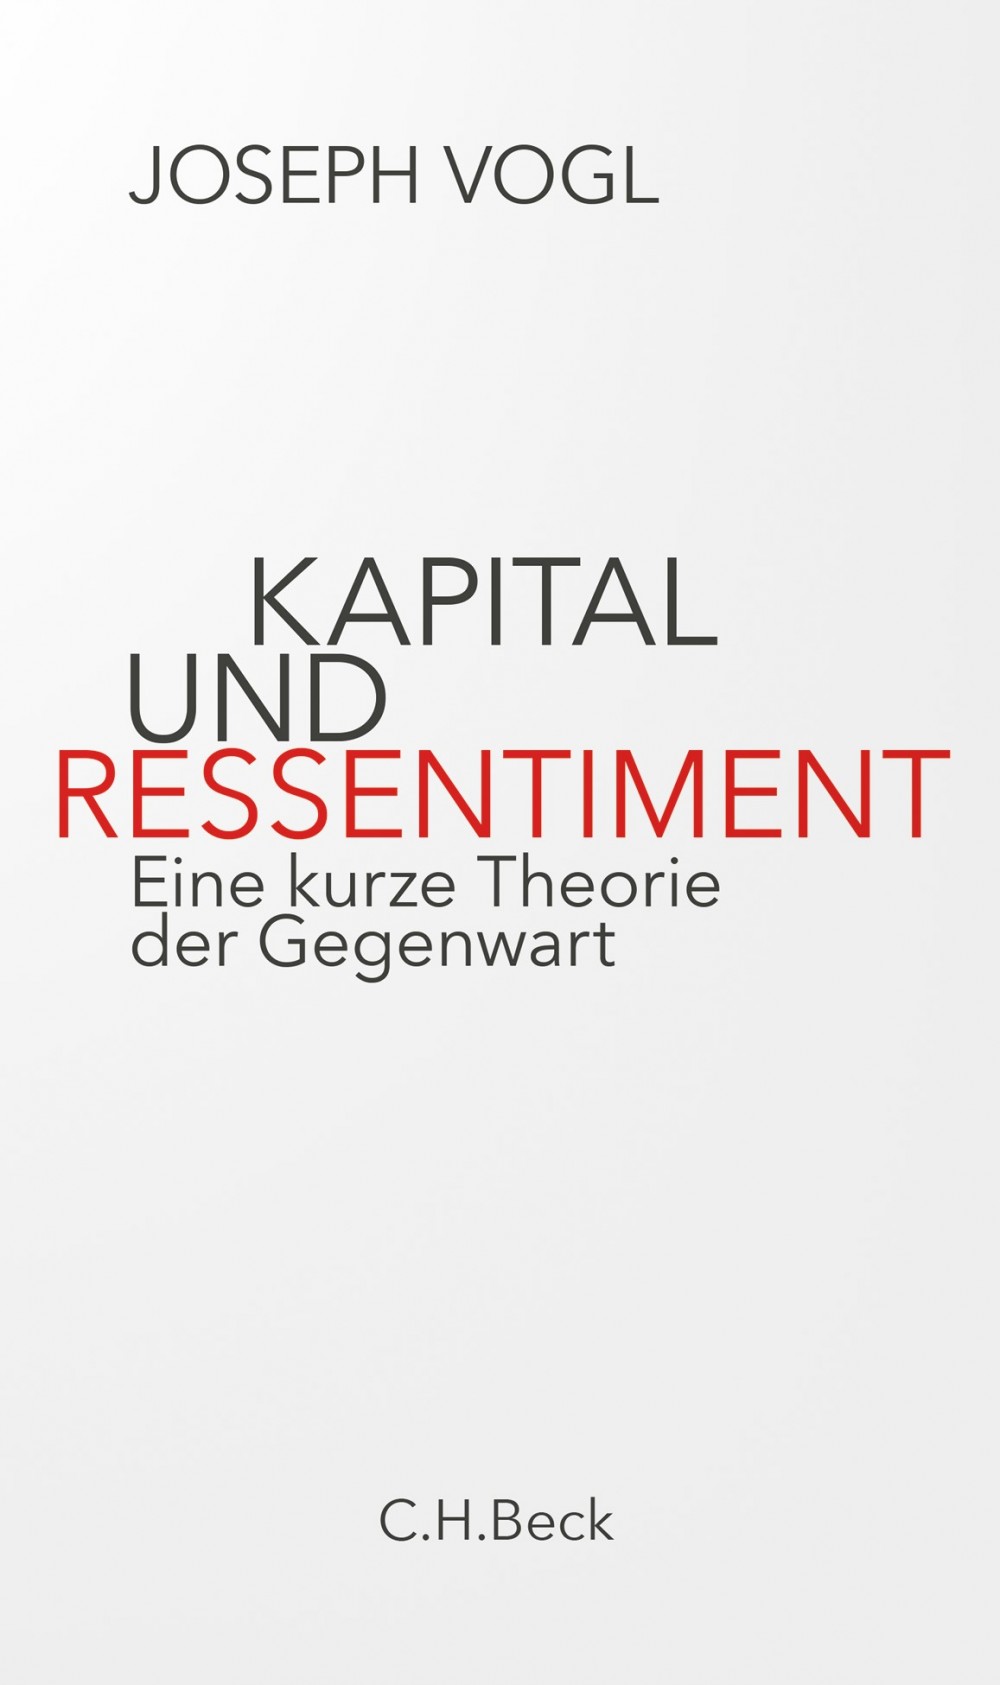 Joseph Vogl, Kapital und Ressentiment.  Eine kurze Theorie der Gegenwart.